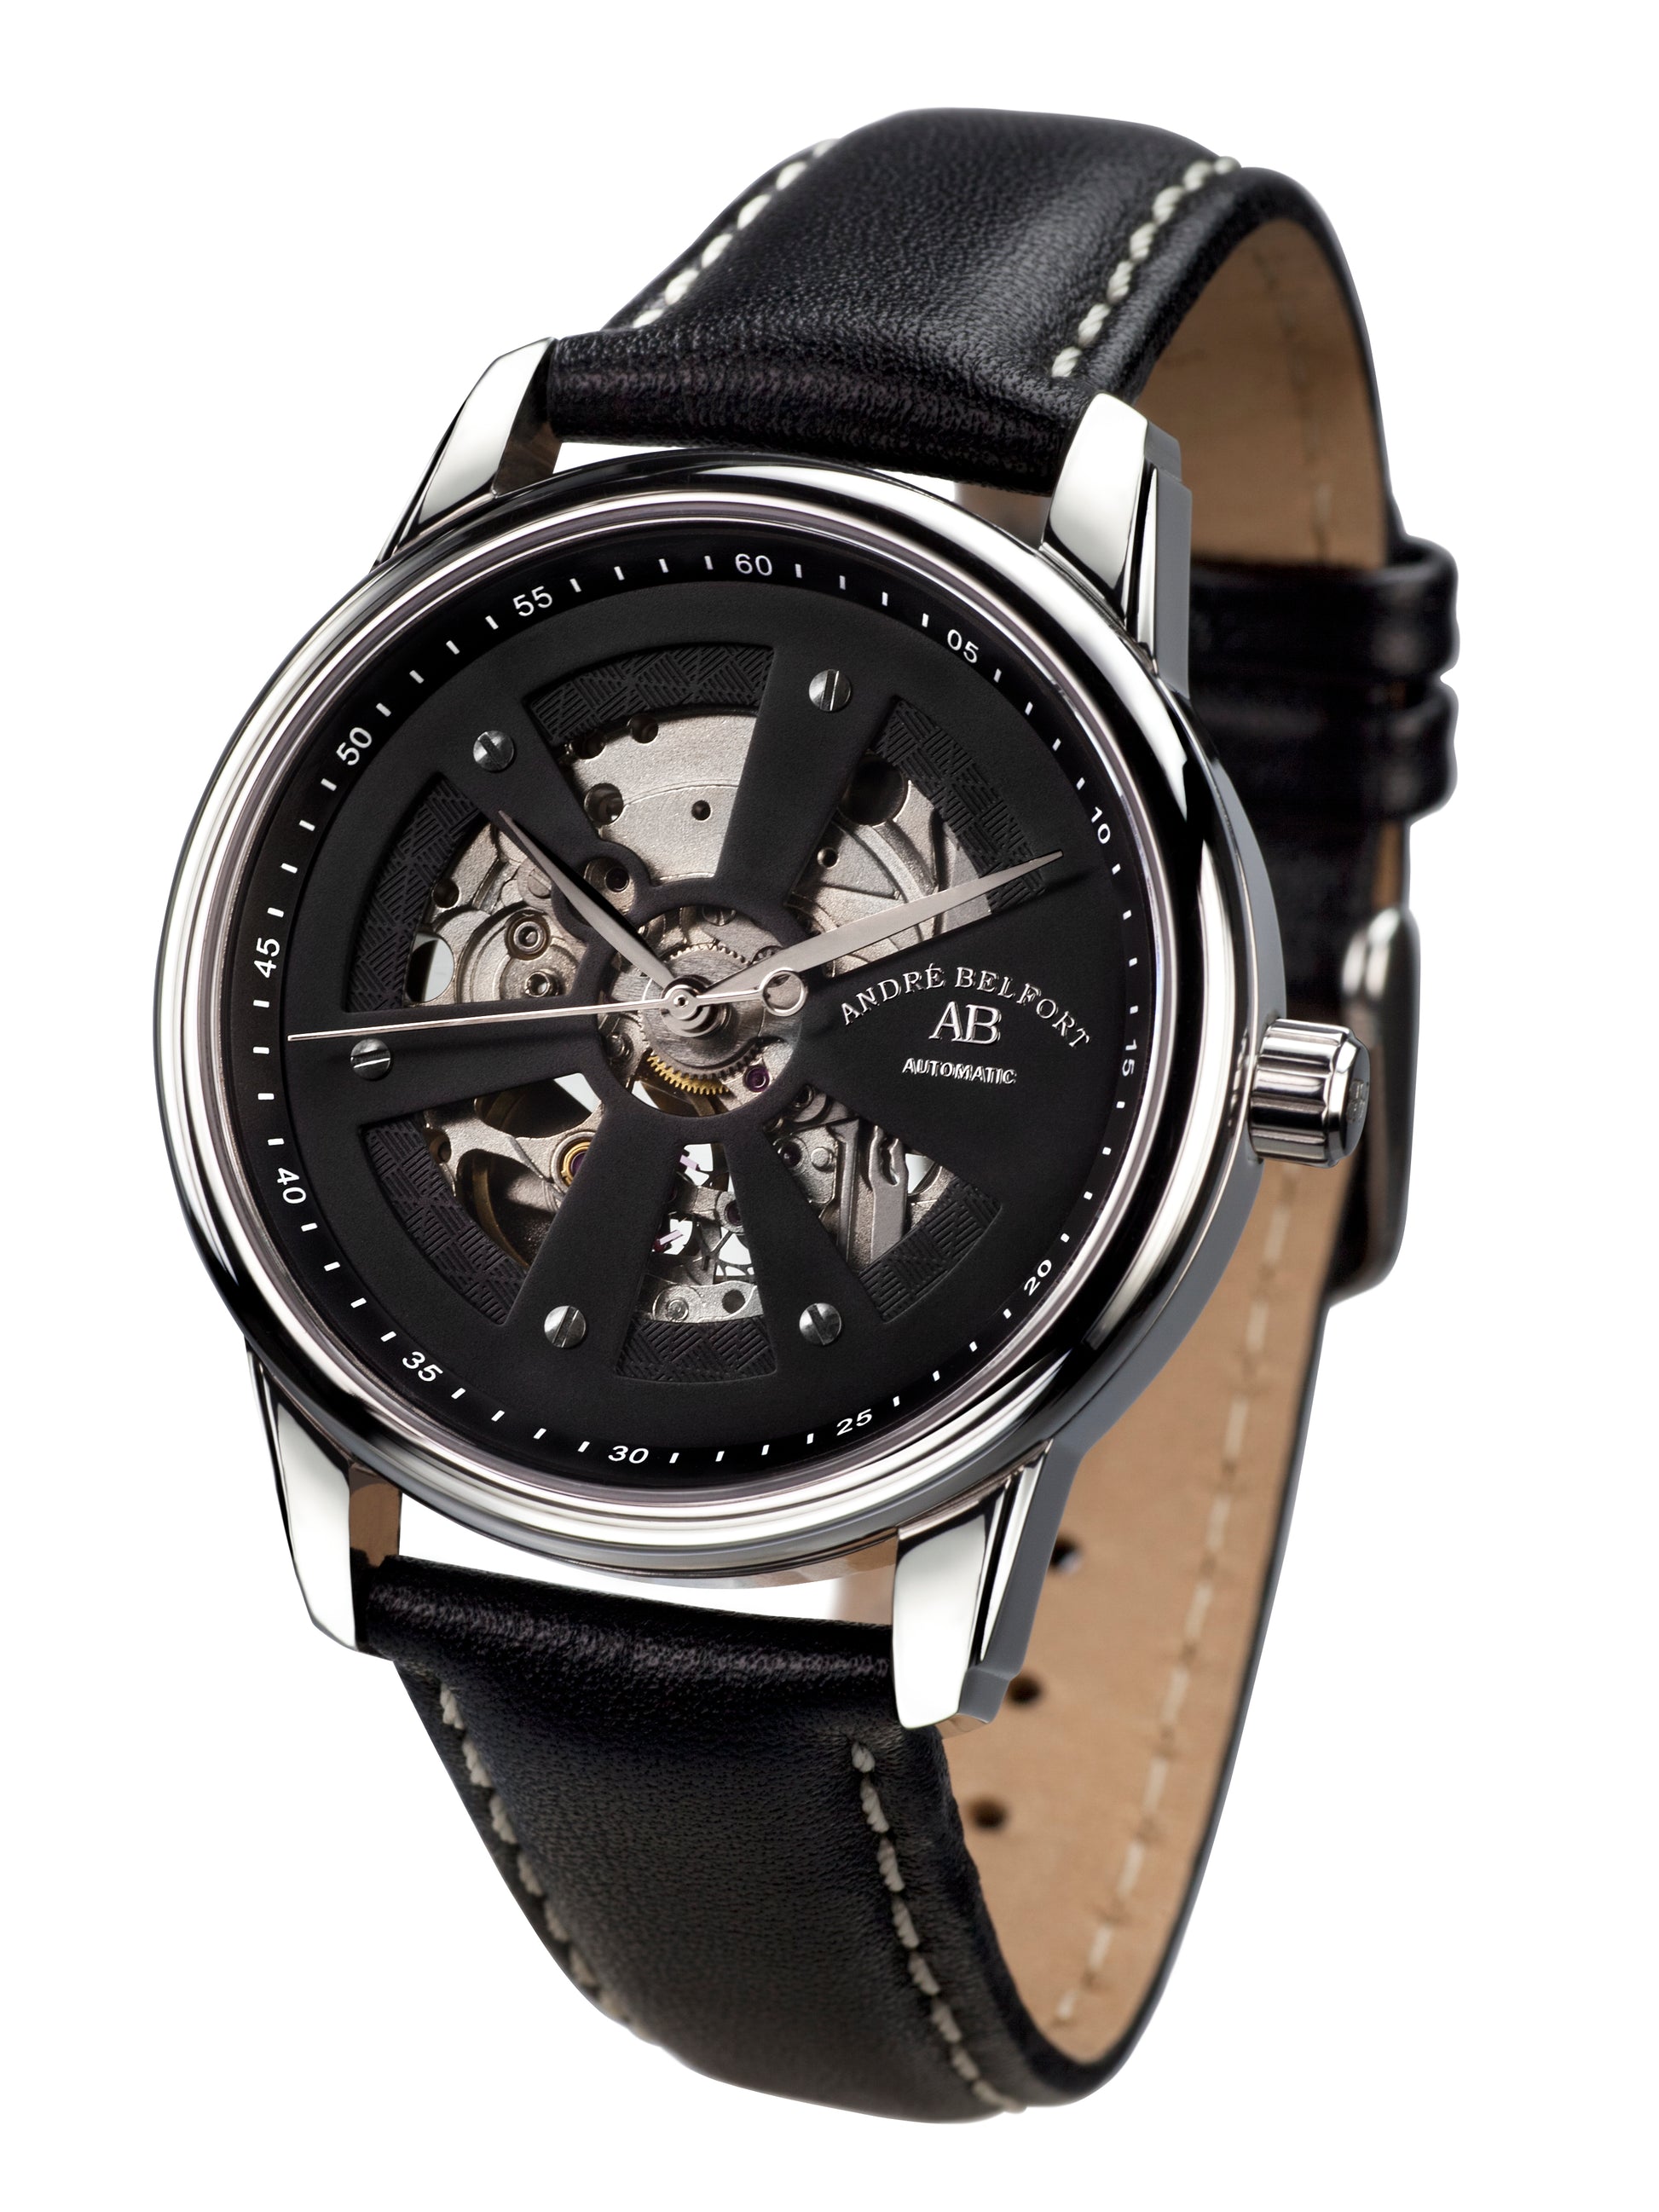 Automatic watches — Roue du temps — André Belfort — leather black